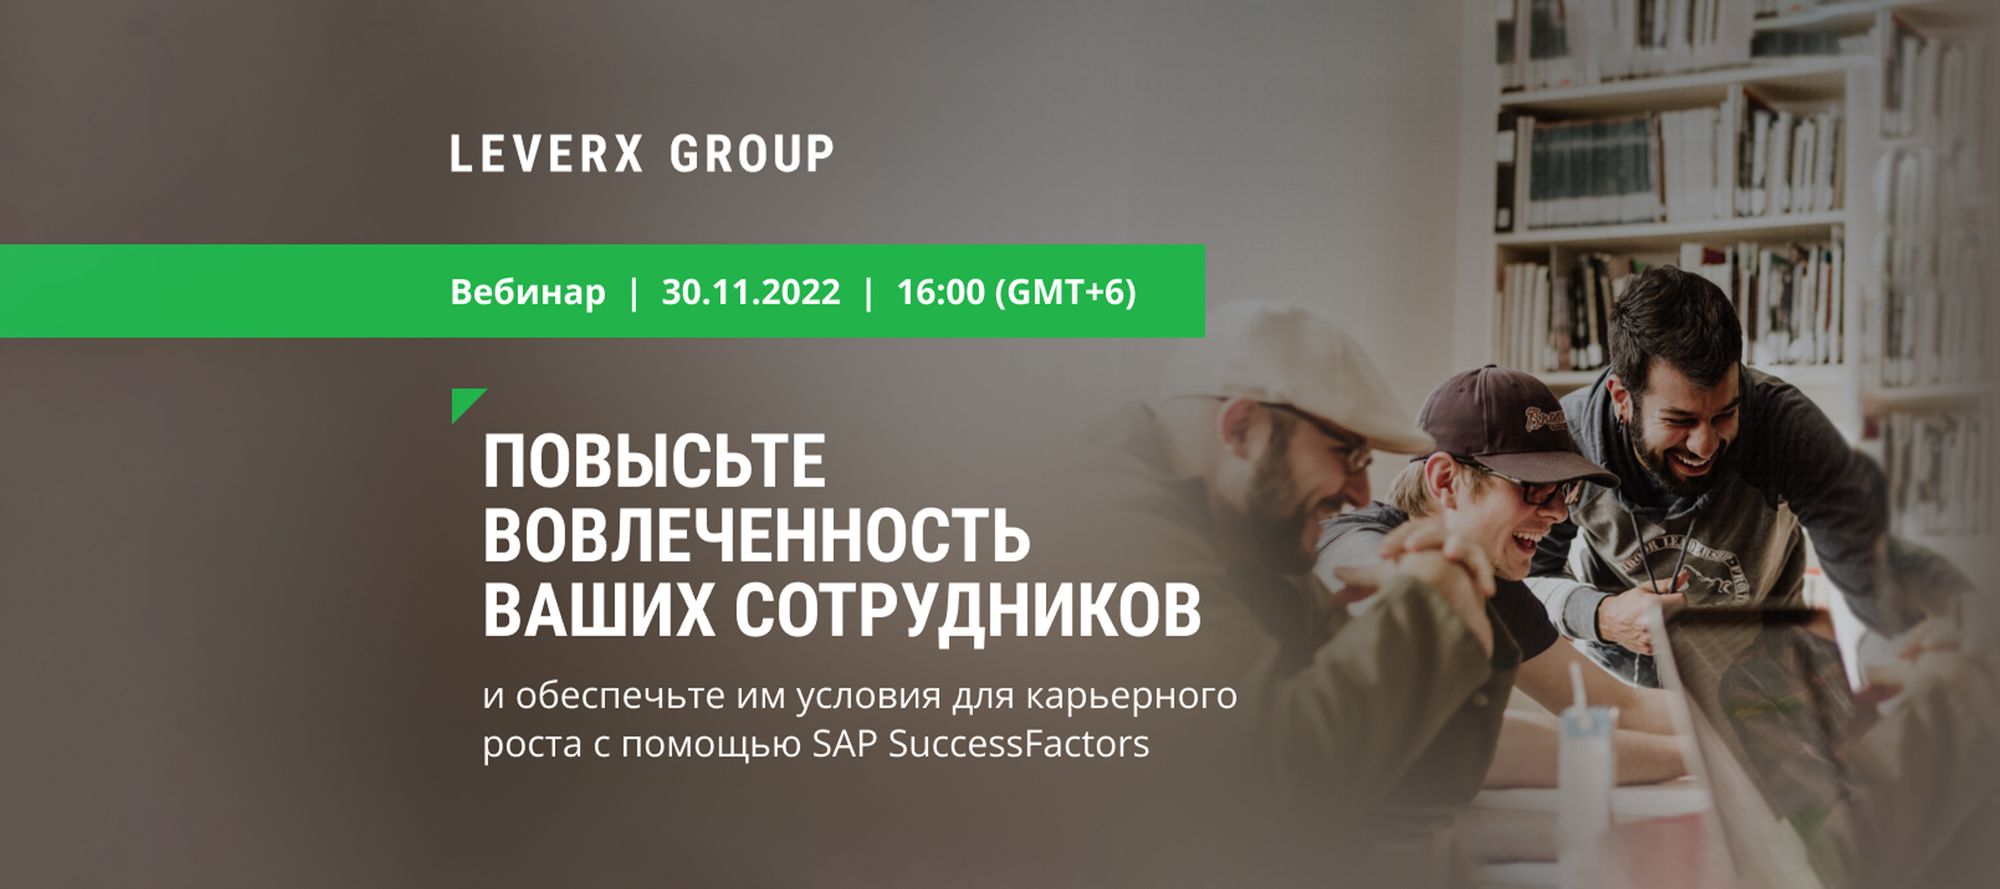 LeverX Group проведет бесплатный онлайн-вебинар по HR-менеджменту